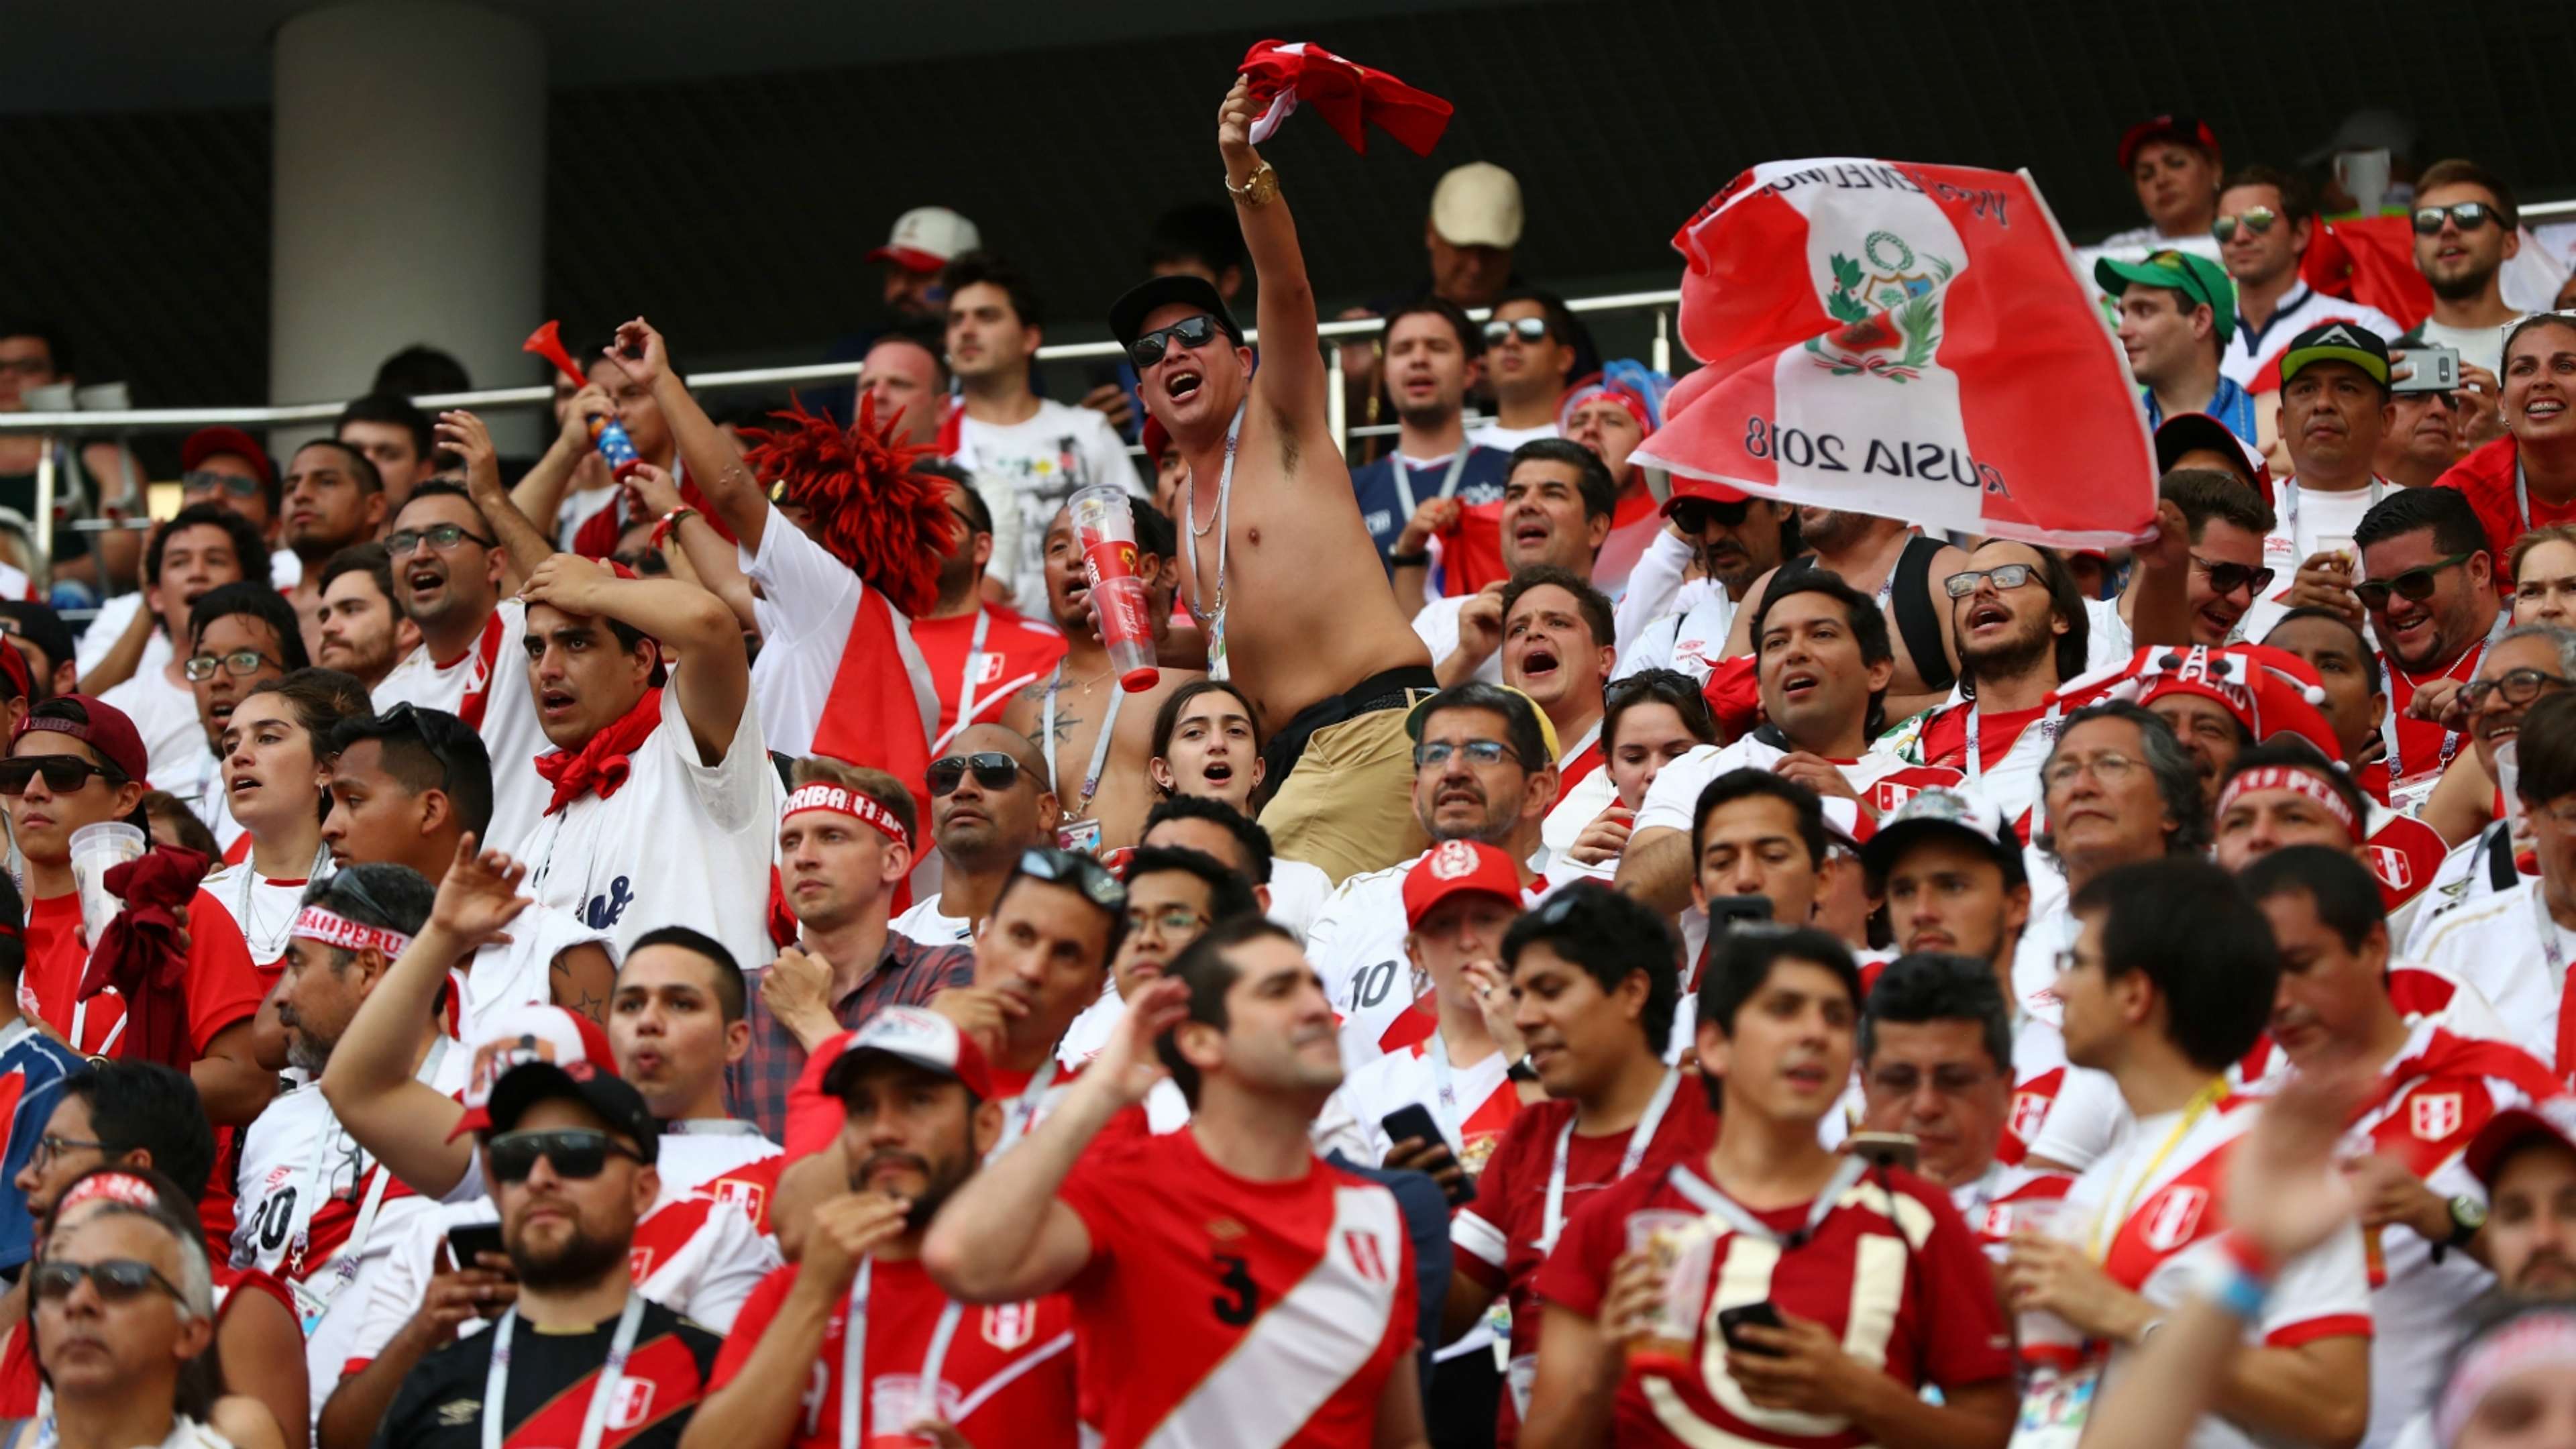 Perú fans